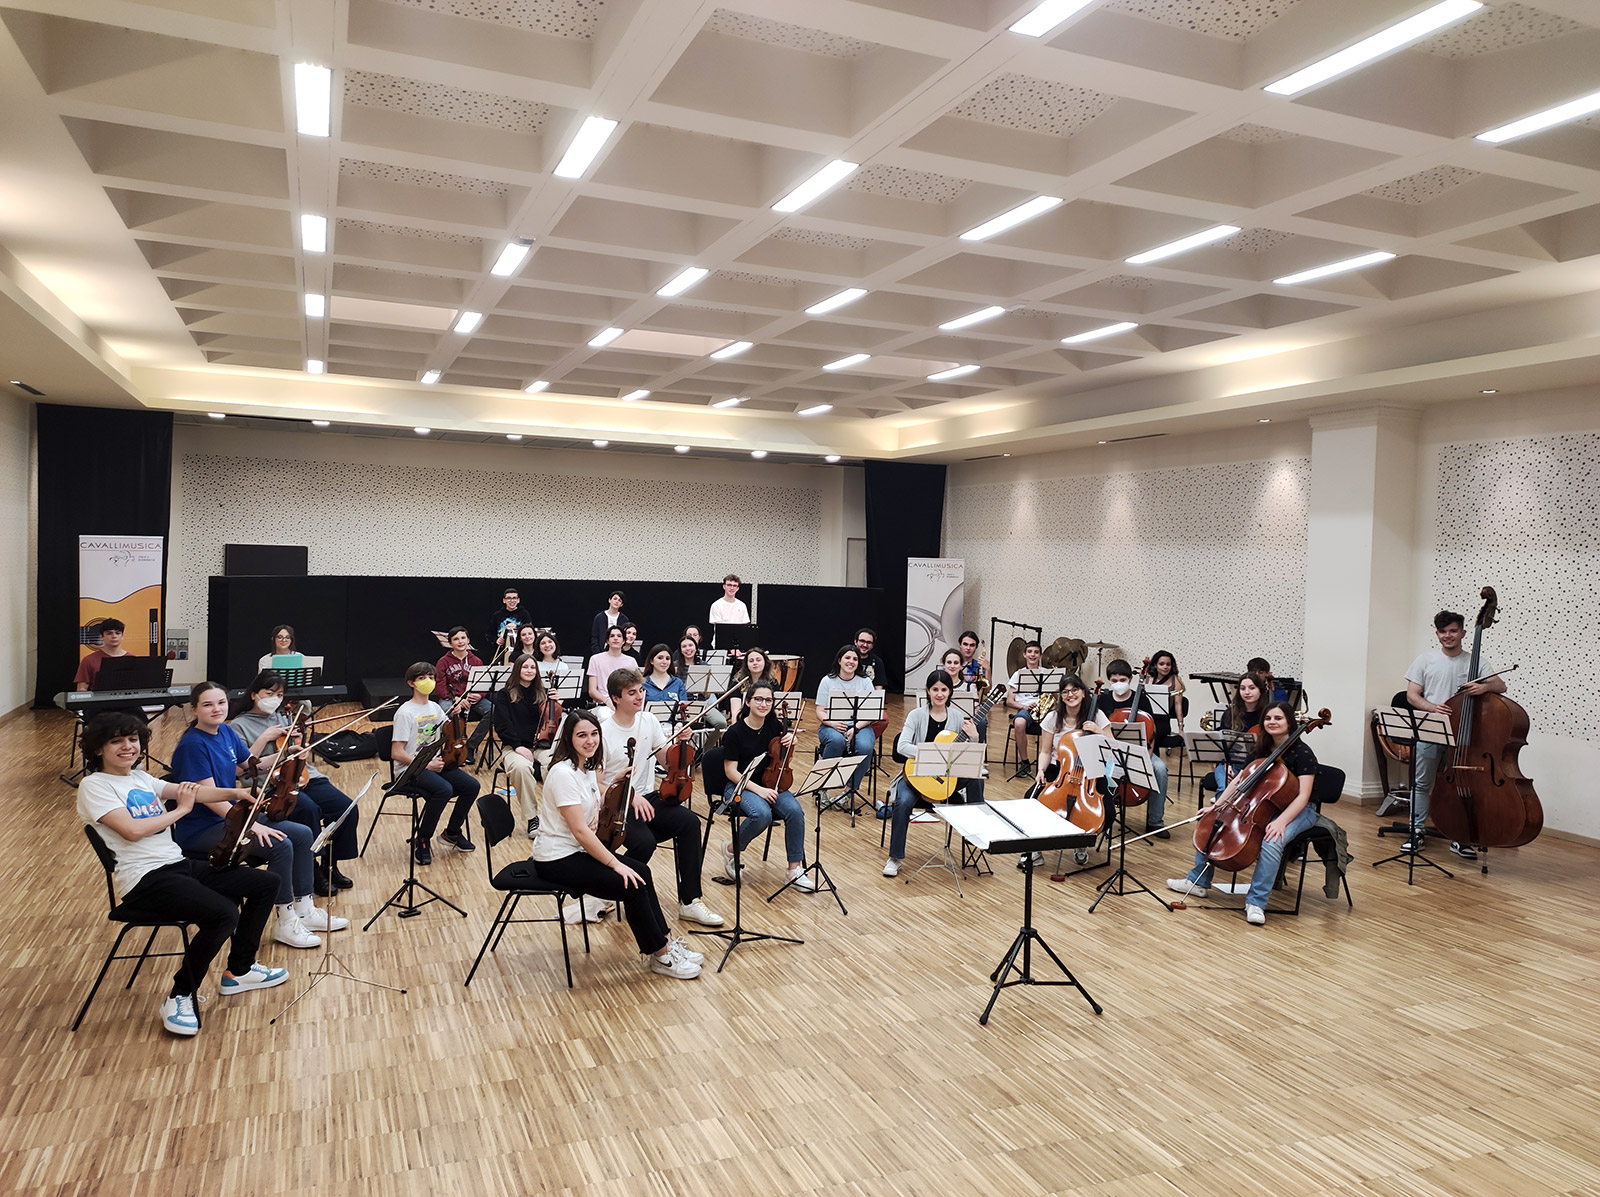 Orchestra Giovanile Bresciana